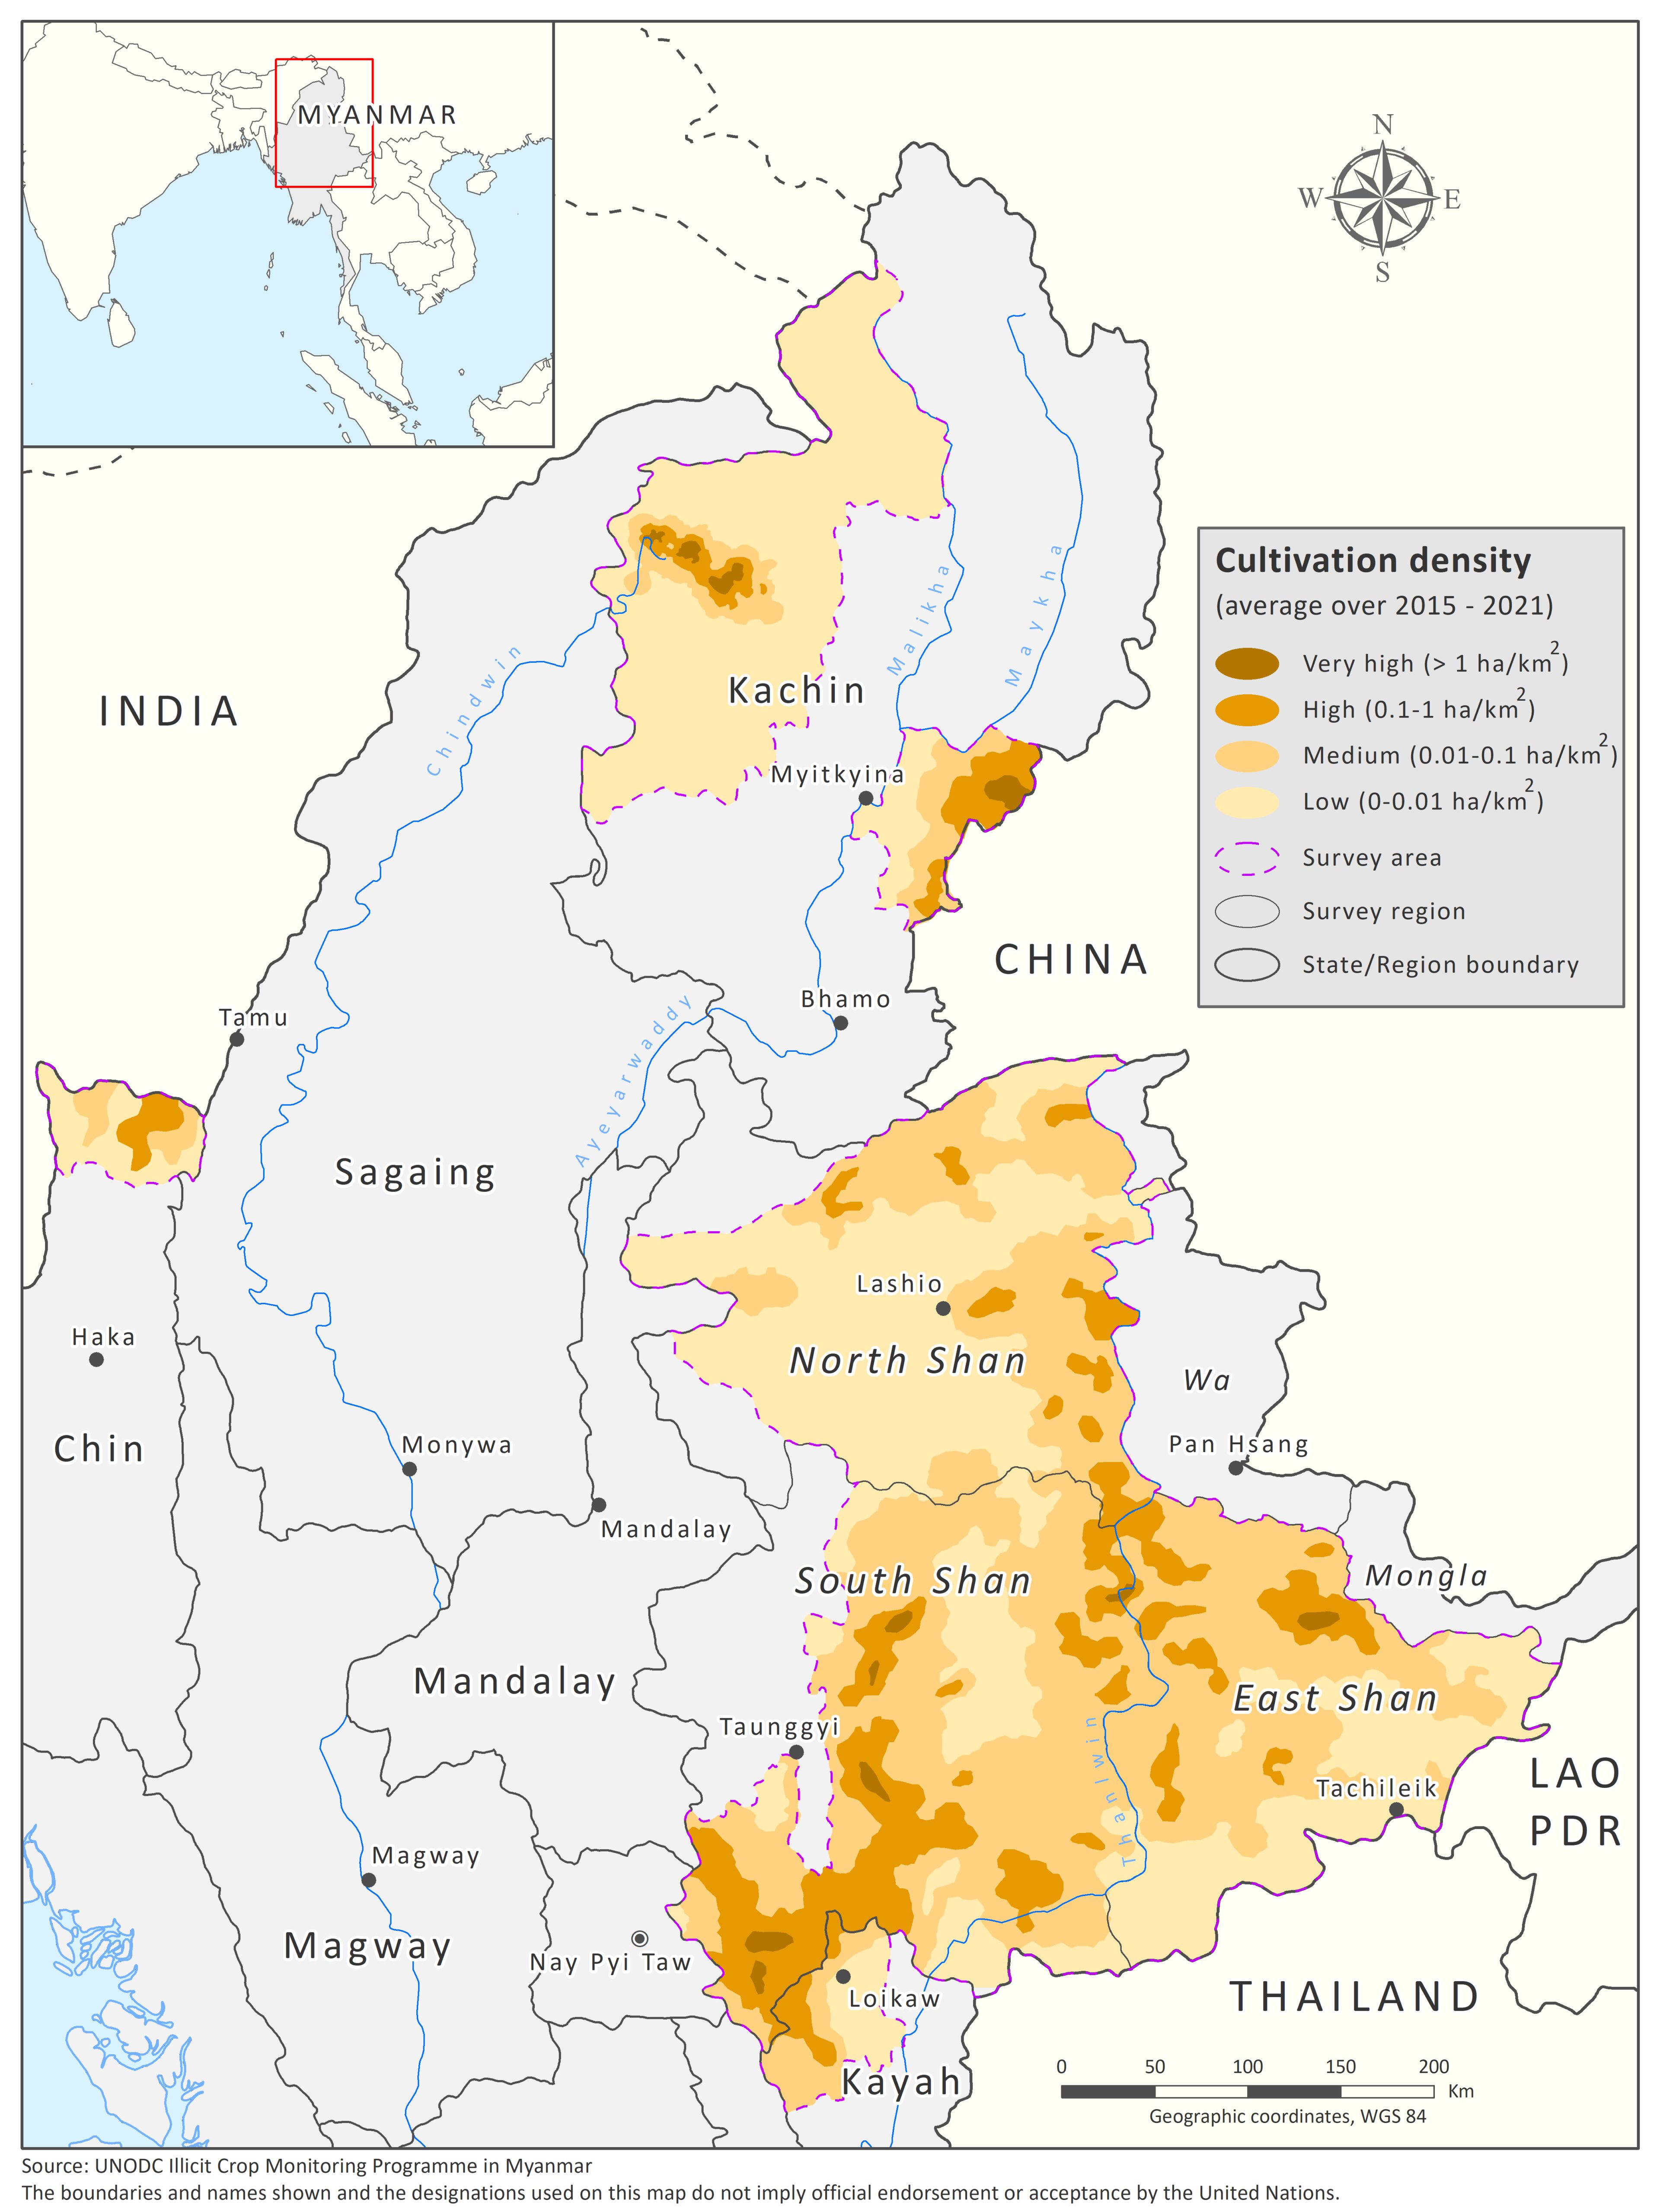 Schlafmohnanbaudichte in Myanmar (Durchschnitt über den Zeitraum 2015-2021 in ha/km²)